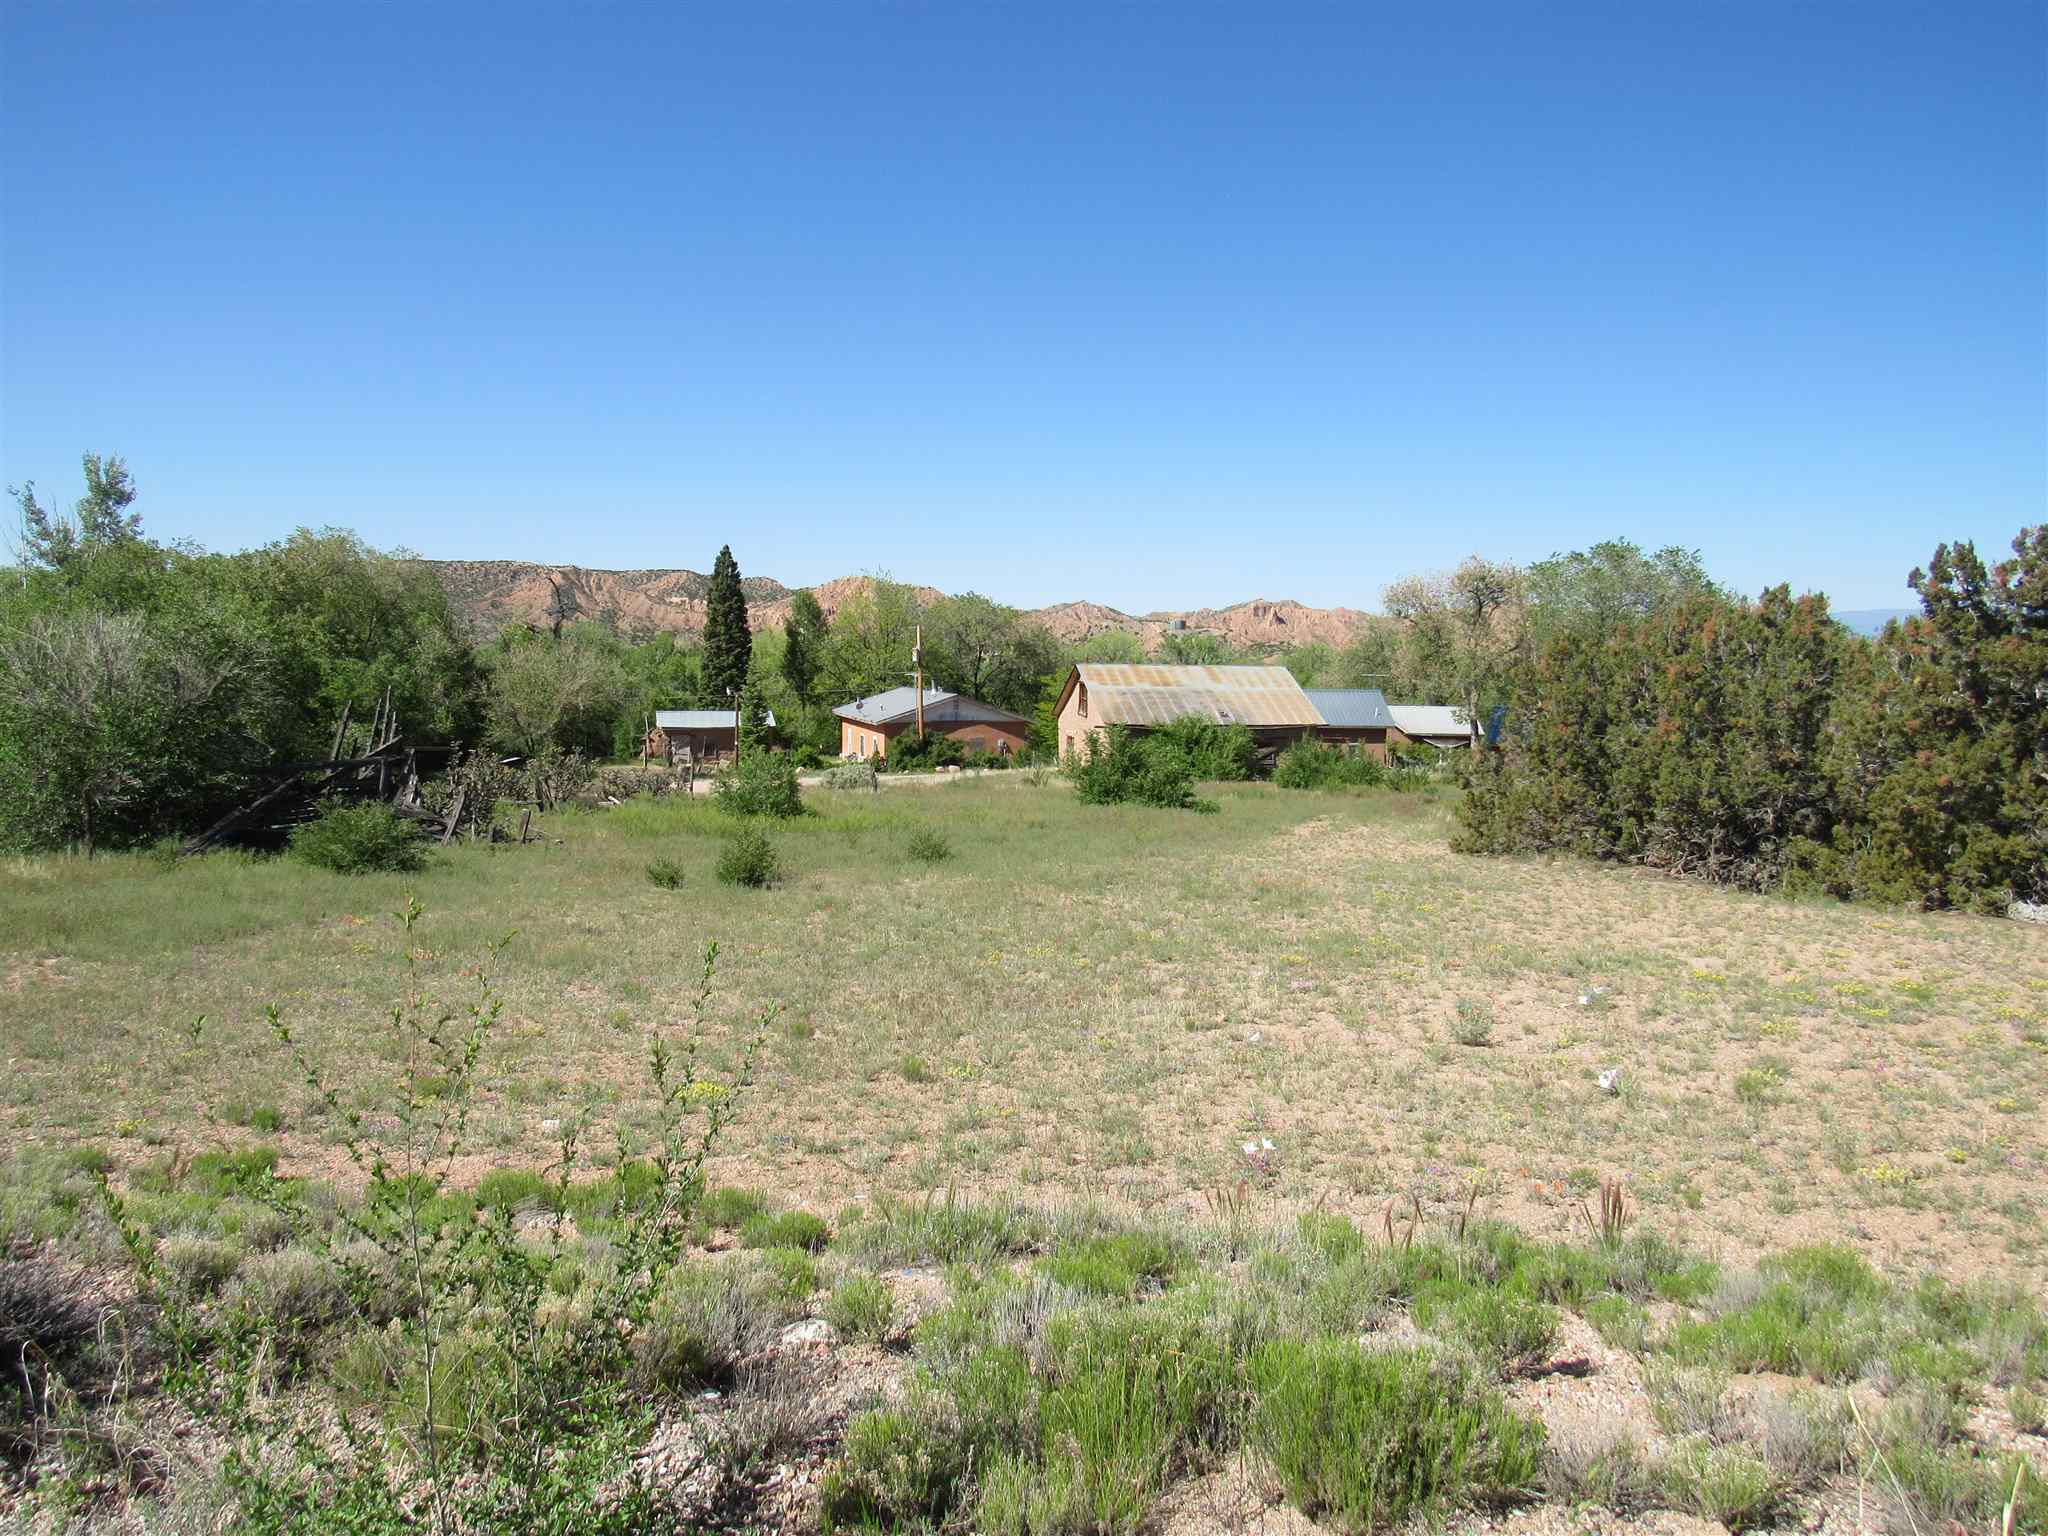 12 CAMINO DE LOS BACAS, Chimayo, New Mexico 87522, ,Land,For Sale,12 CAMINO DE LOS BACAS,201902206